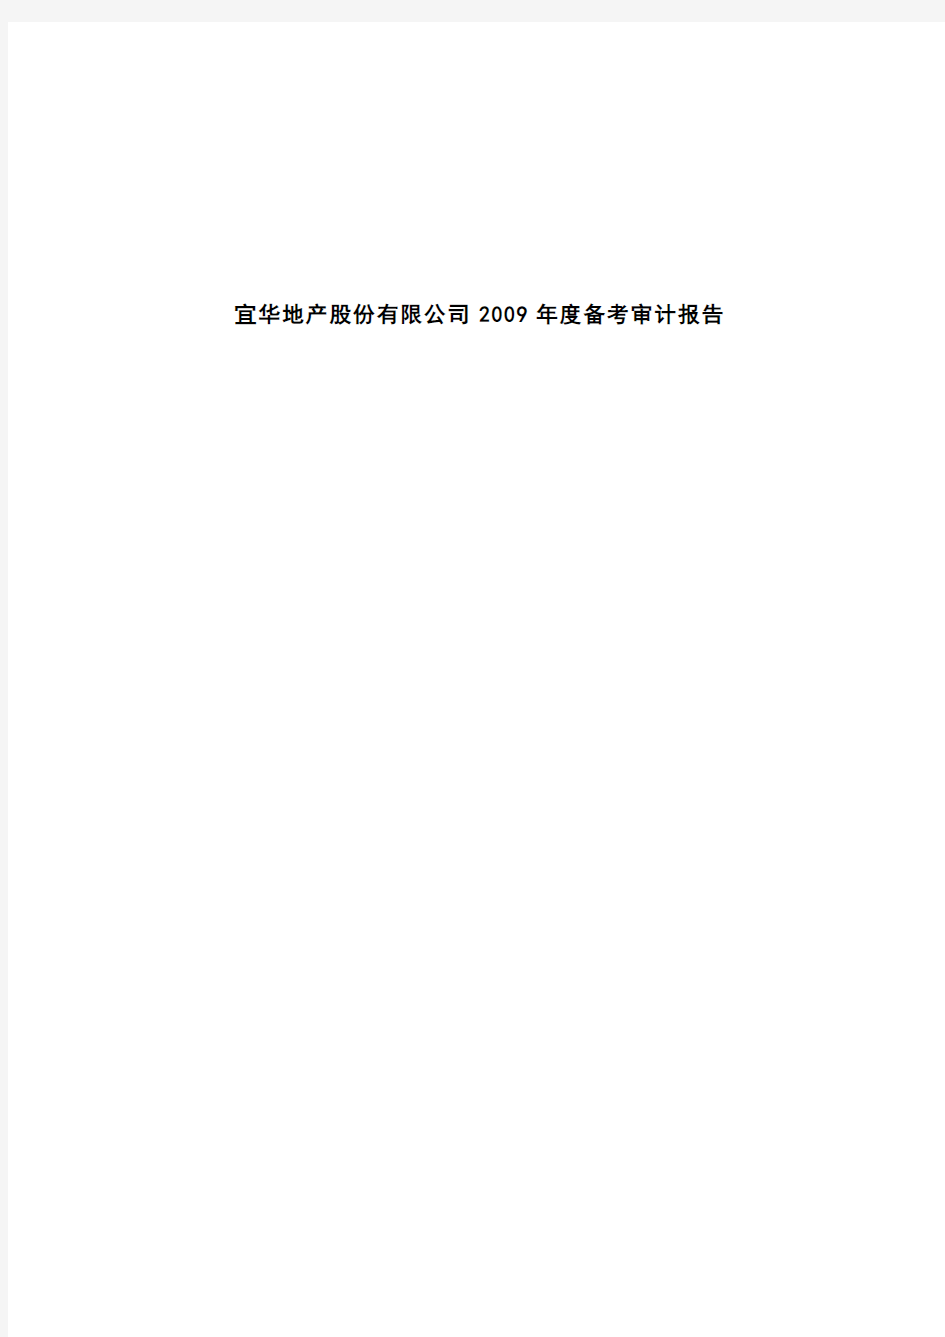 宜华地产：宜华地产股份有限公司2009年度备考审计报告 2010-03-04